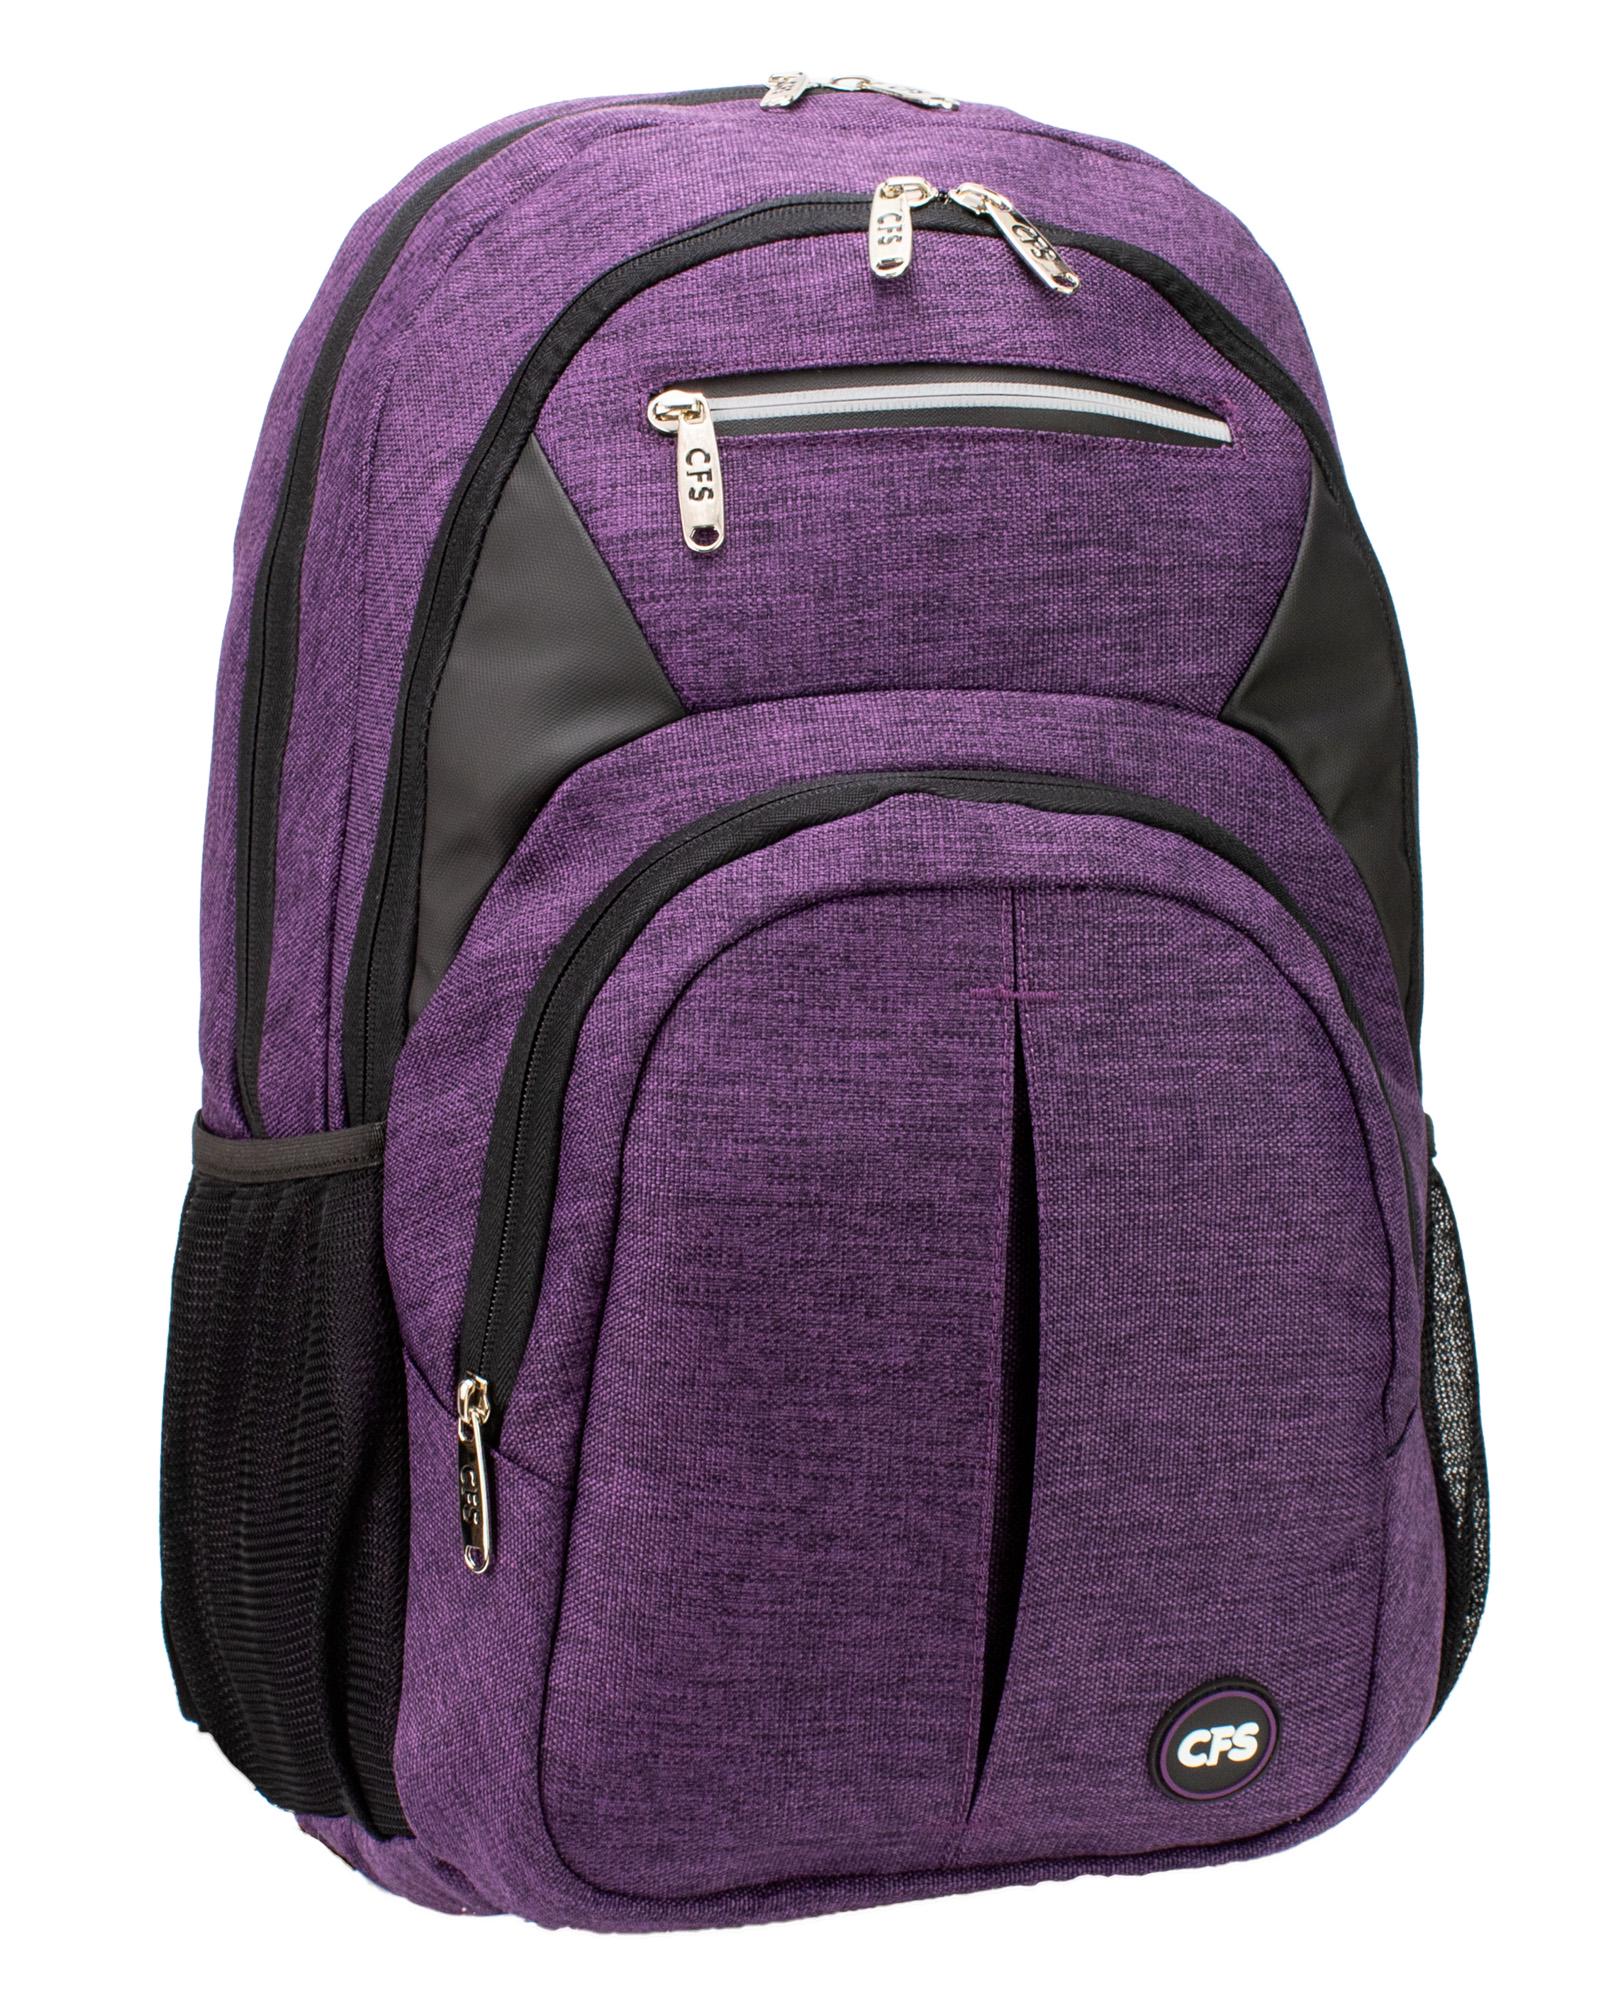 Рюкзак молодежный Cool For School 48x33x22 см 26-35 л Фиолетовый (CF86746-02)